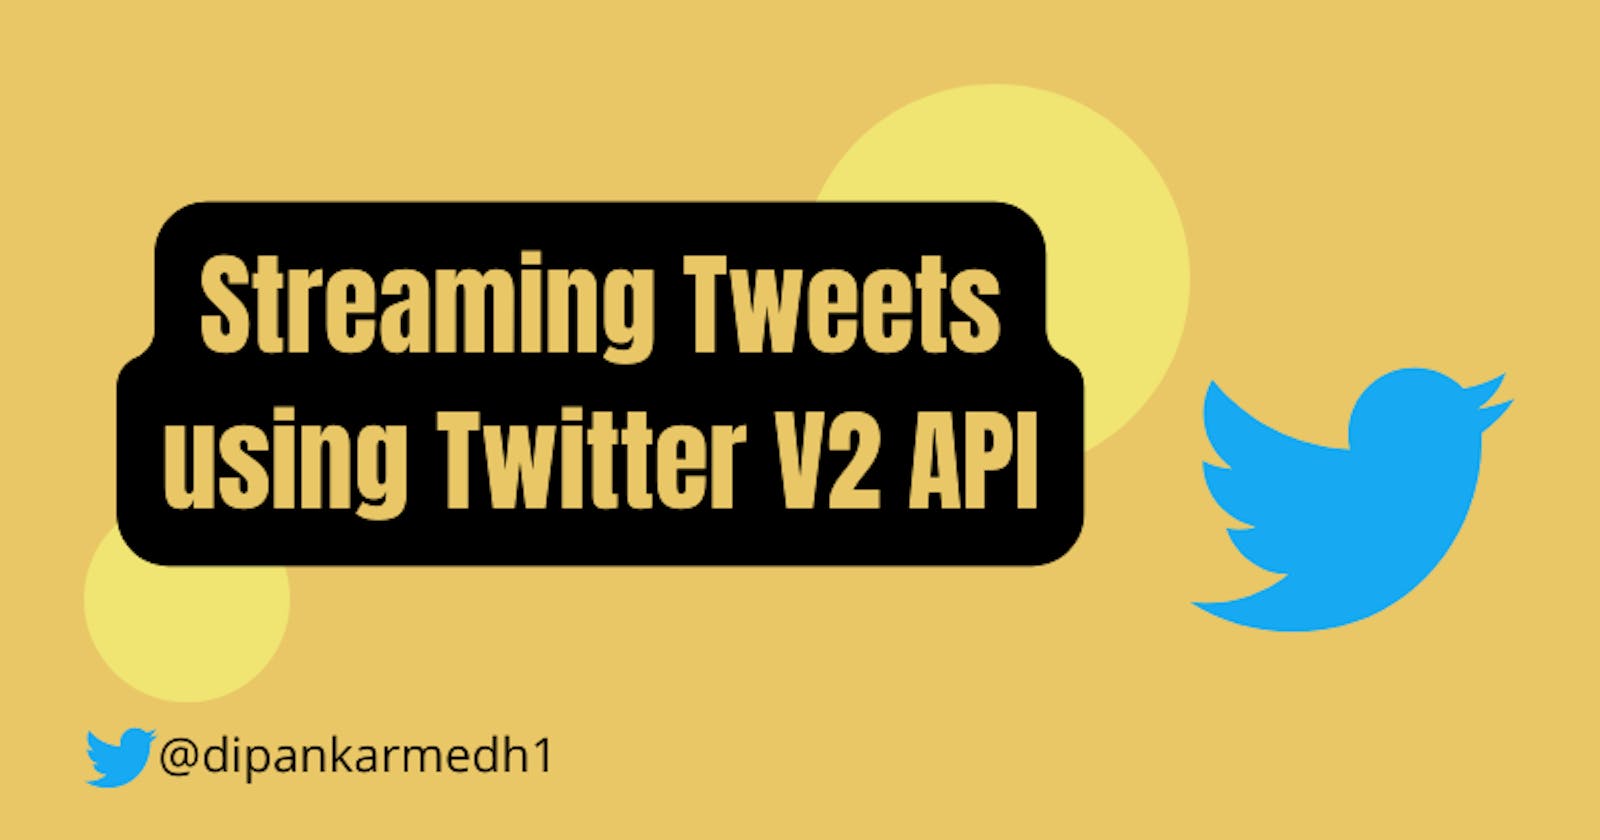 Streaming tweets using Twitter V2 API | Tweepy